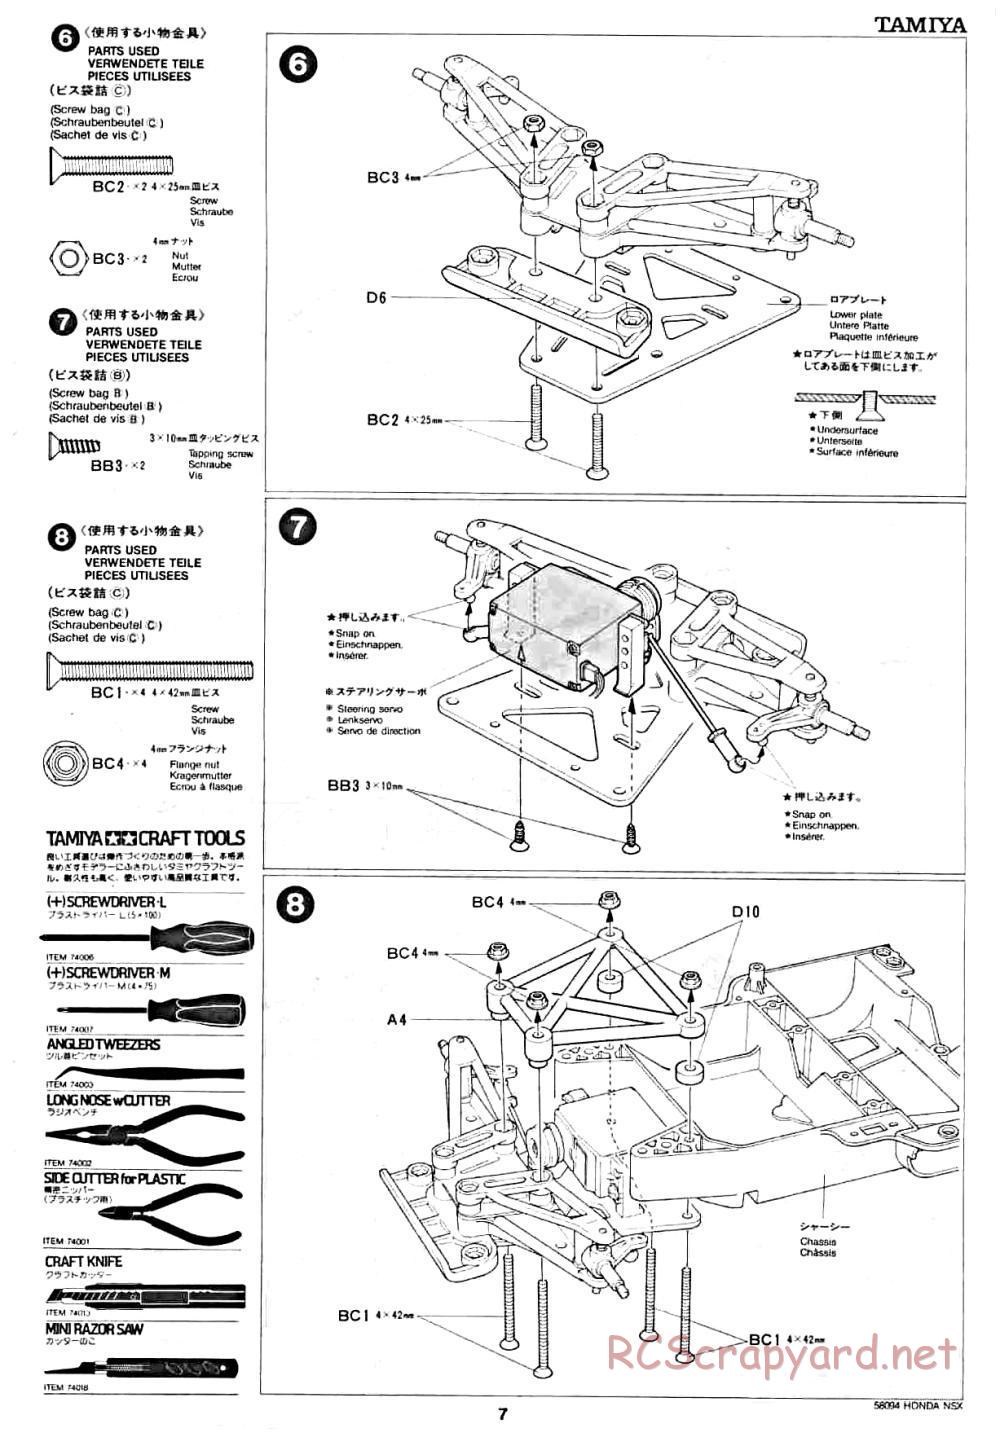 Tamiya - Honda NSX - 58094 - Manual - Page 7